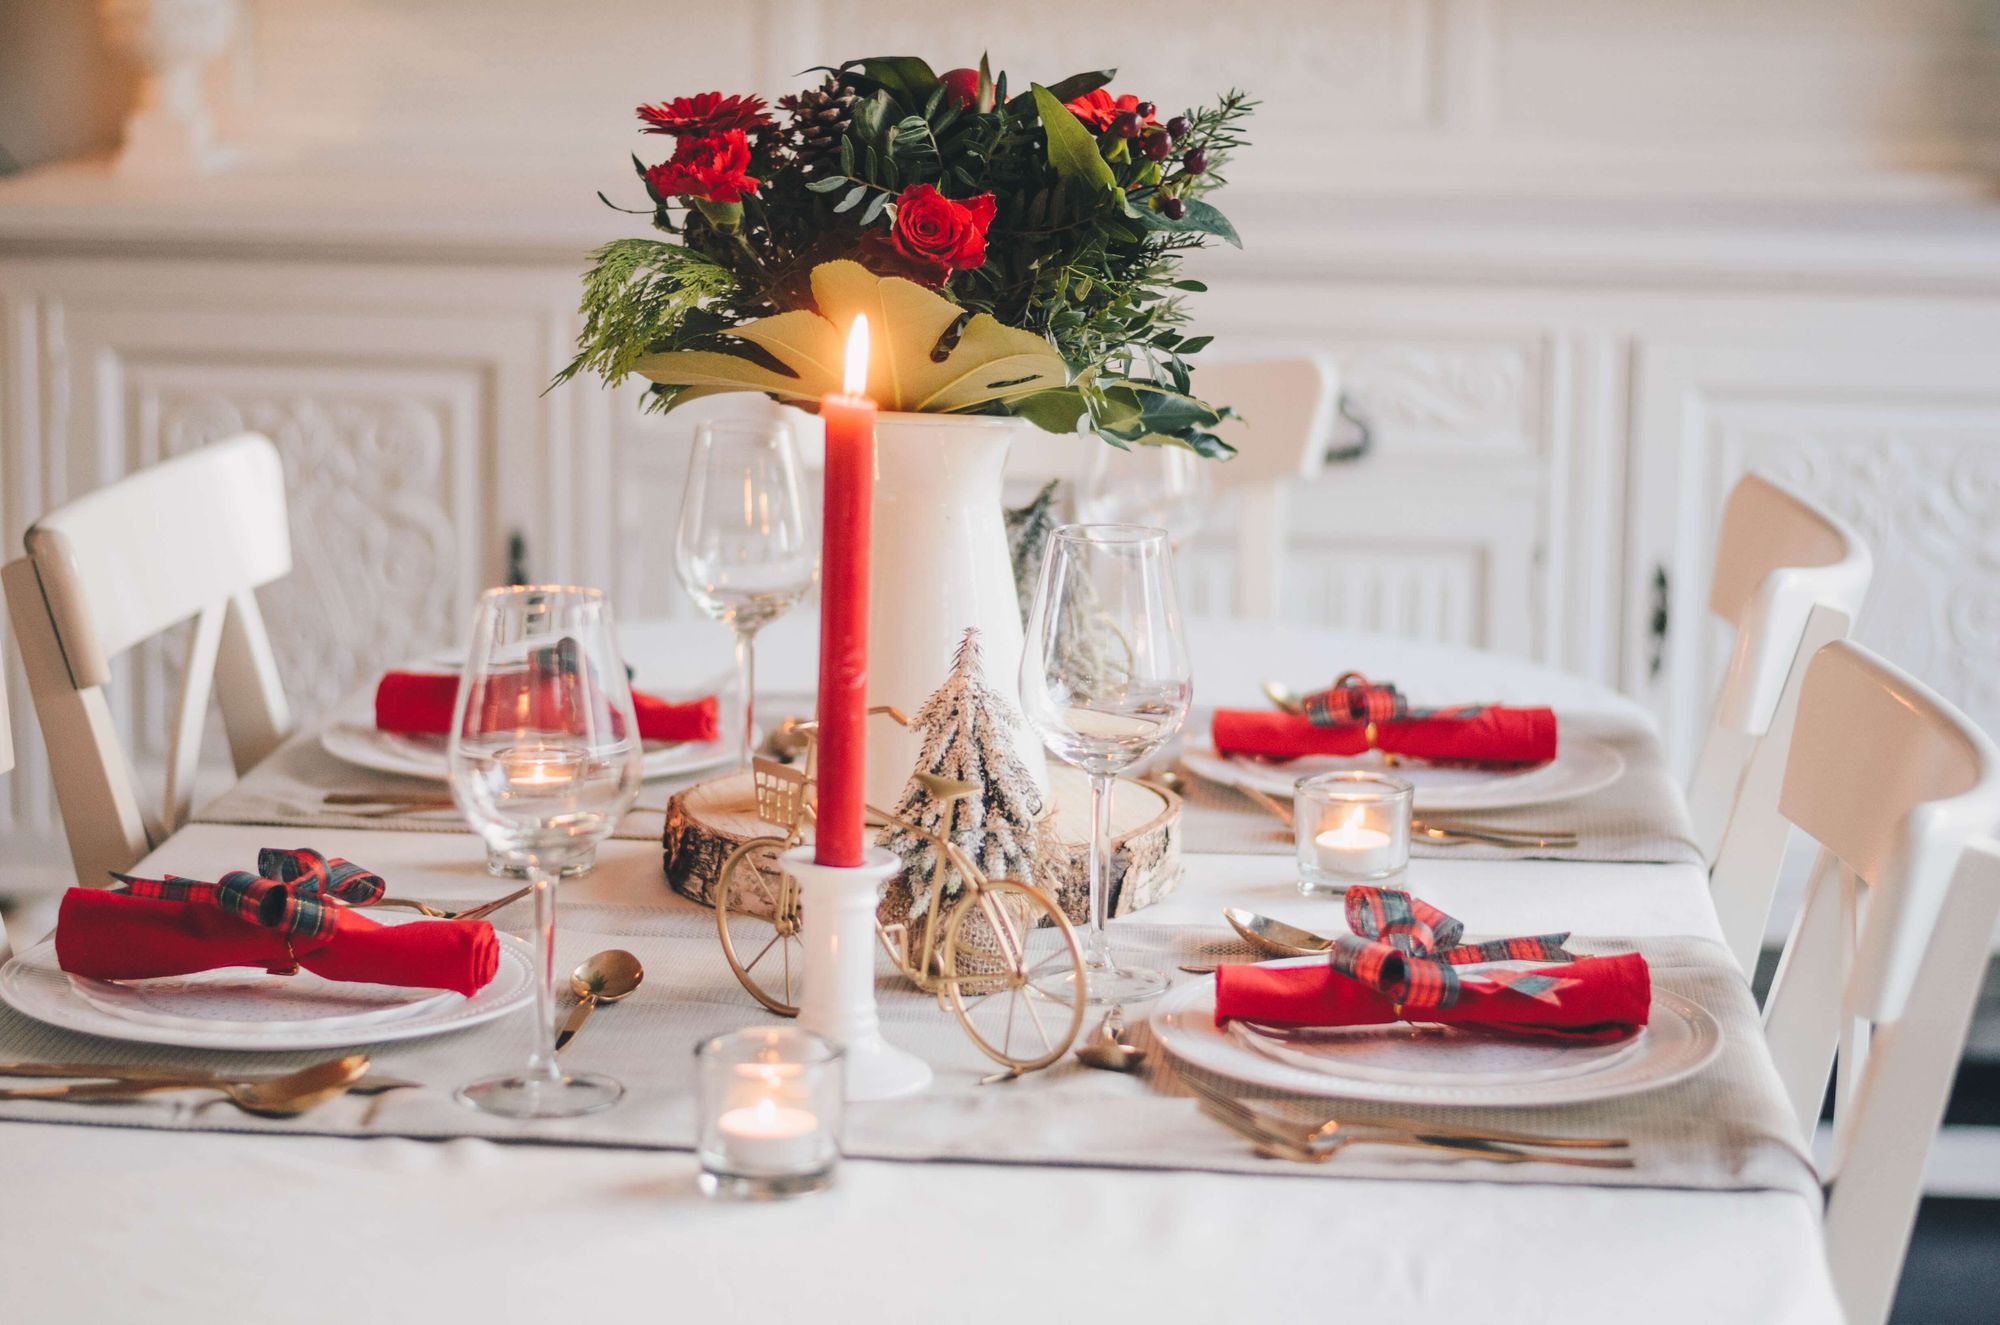 Skapa en fin juldukning genom att dekorera bordet med färska julblommor